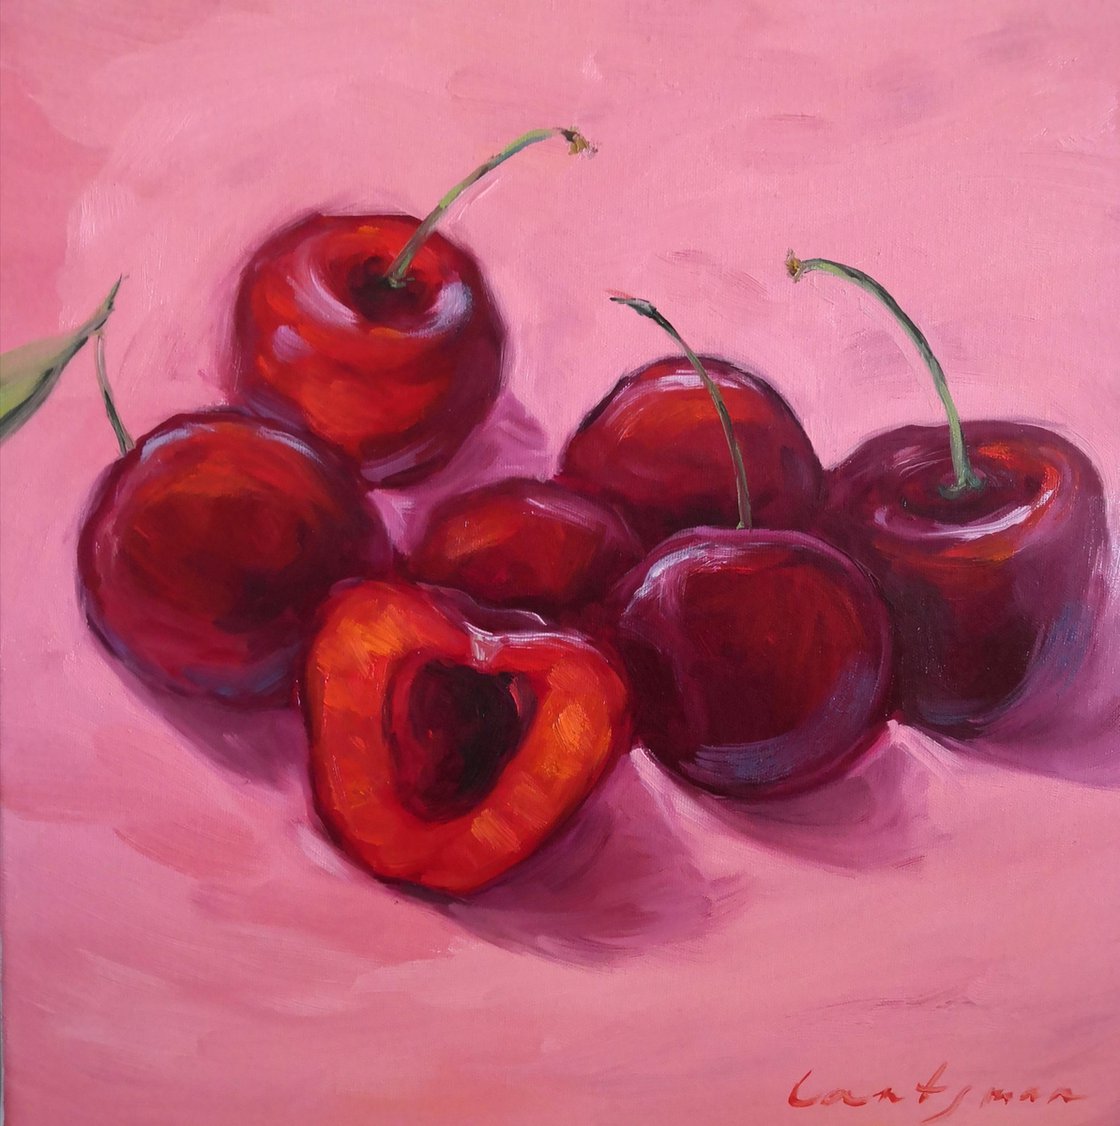 Juicy cherries - original oil painting, realism, painting on